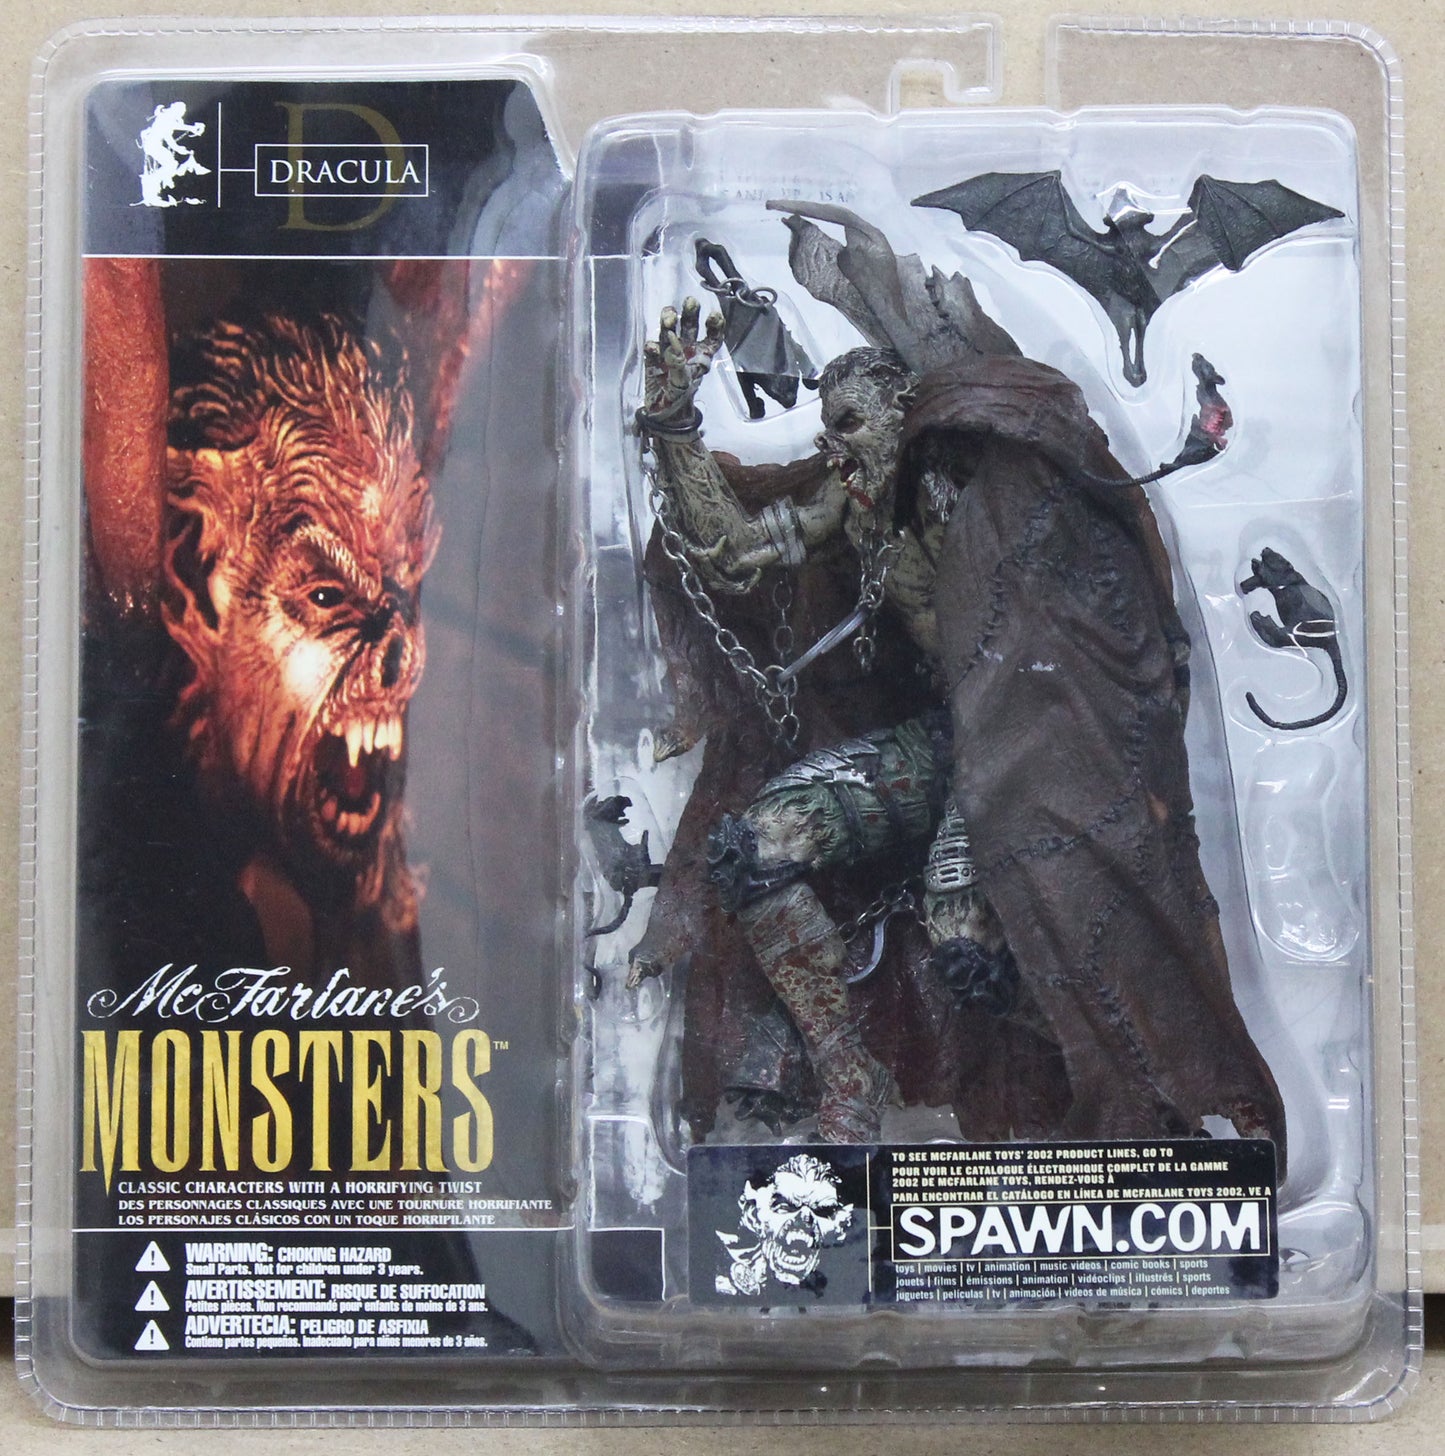 McFarlane's Monsters - Dracula